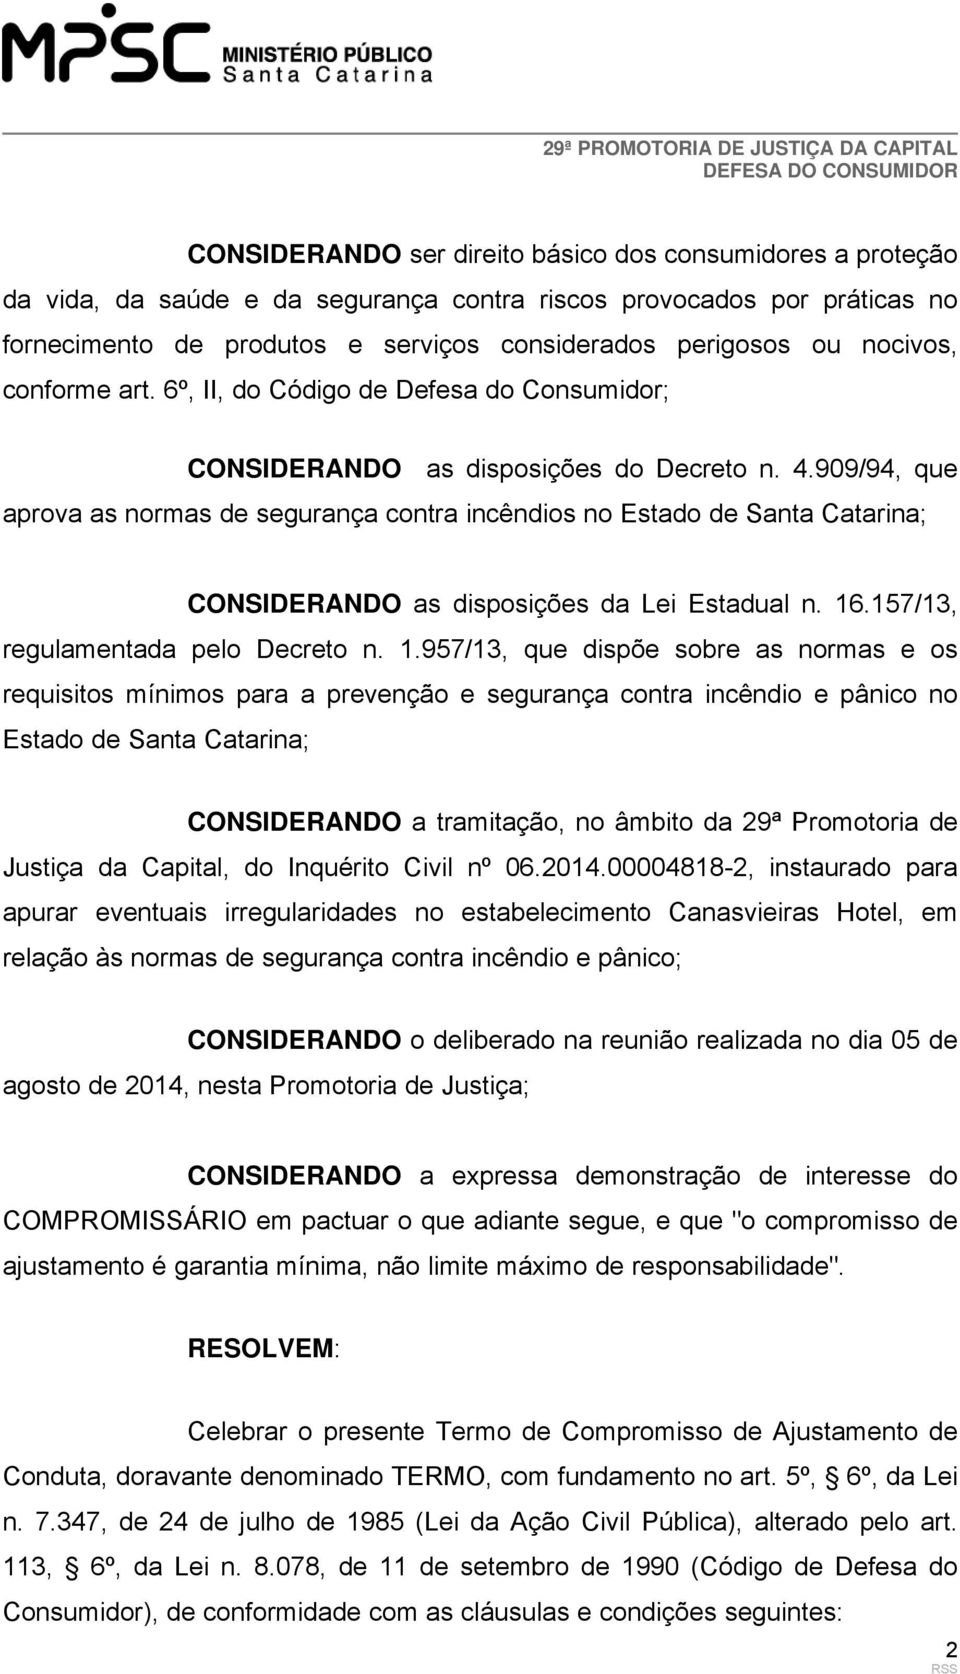 909/94, que aprova as normas de segurança contra incêndios no Estado de Santa Catarina; CONSIDERANDO as disposições da Lei Estadual n. 16